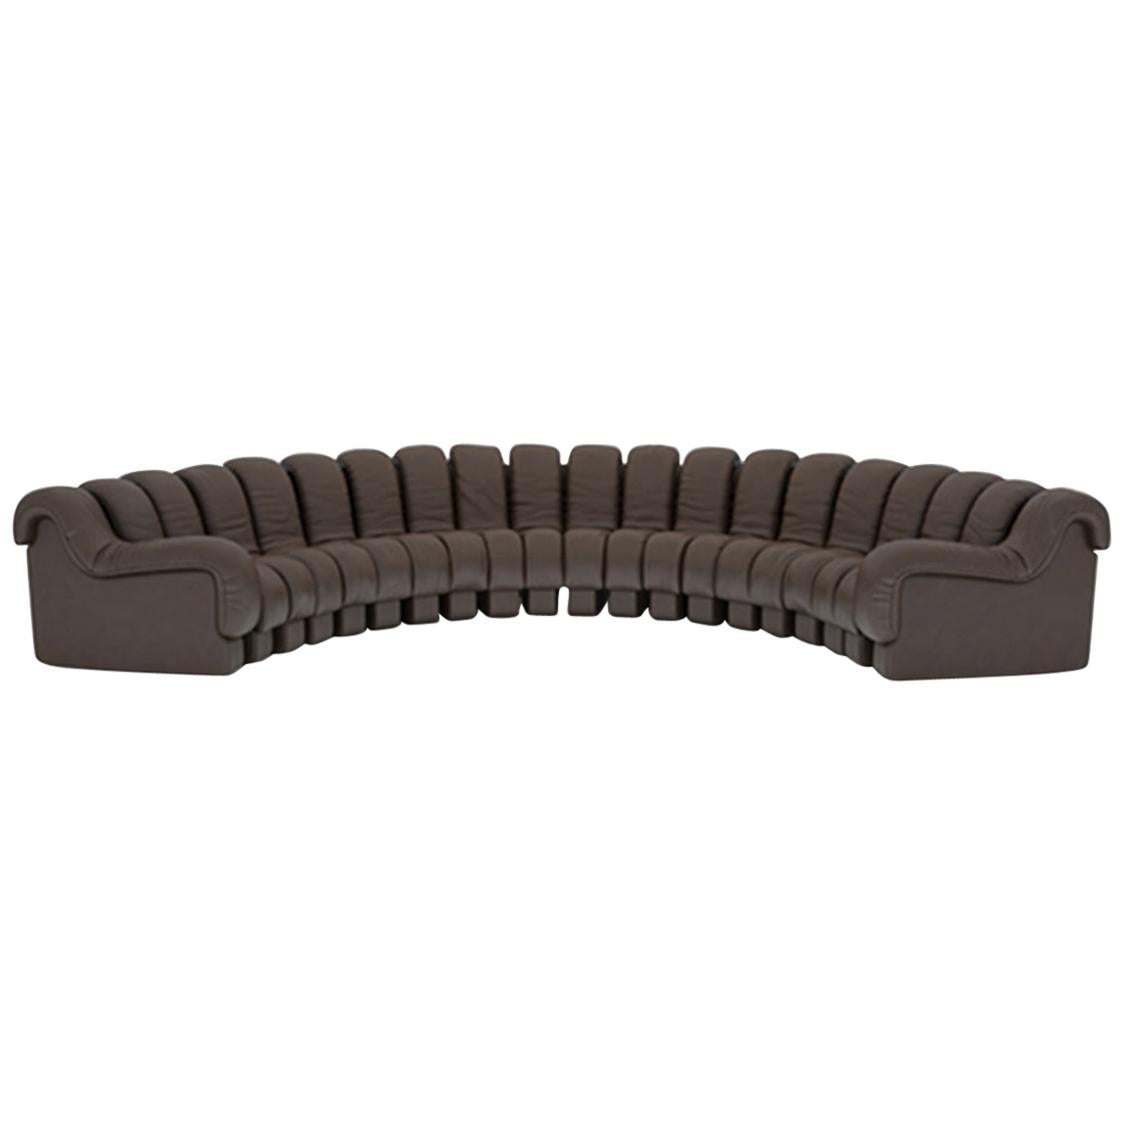 DeSede DS-600 Snake-Shape Modular Sofa in Espresso Leather & Adjustable Elements